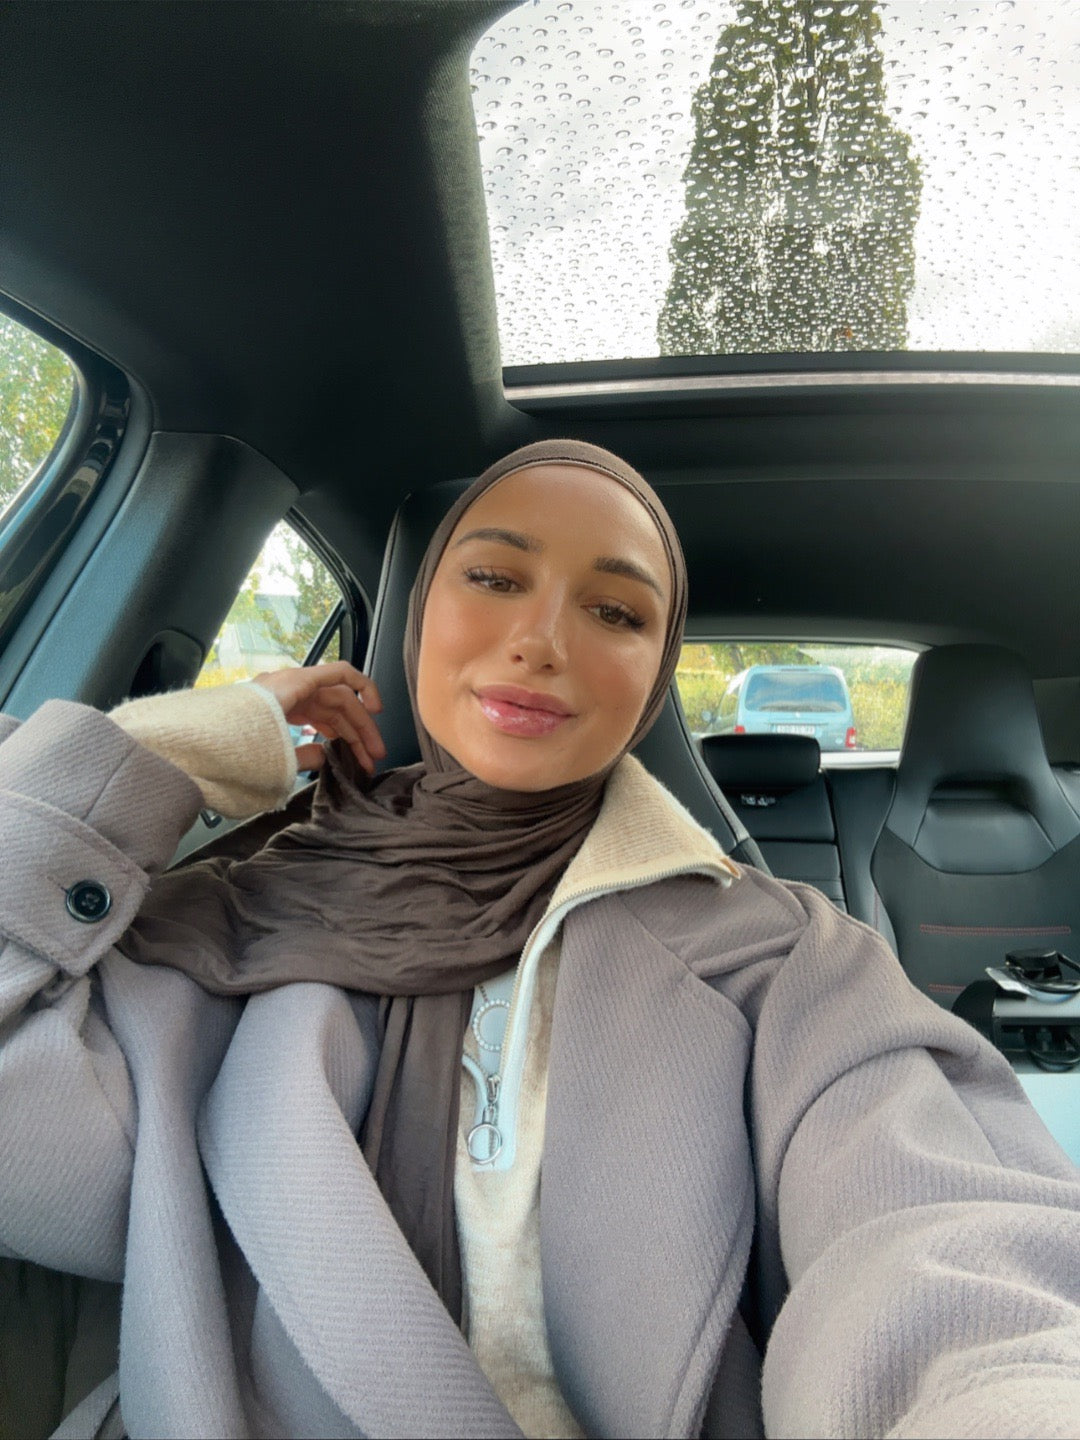 Lux Jersey hijab - choko n07